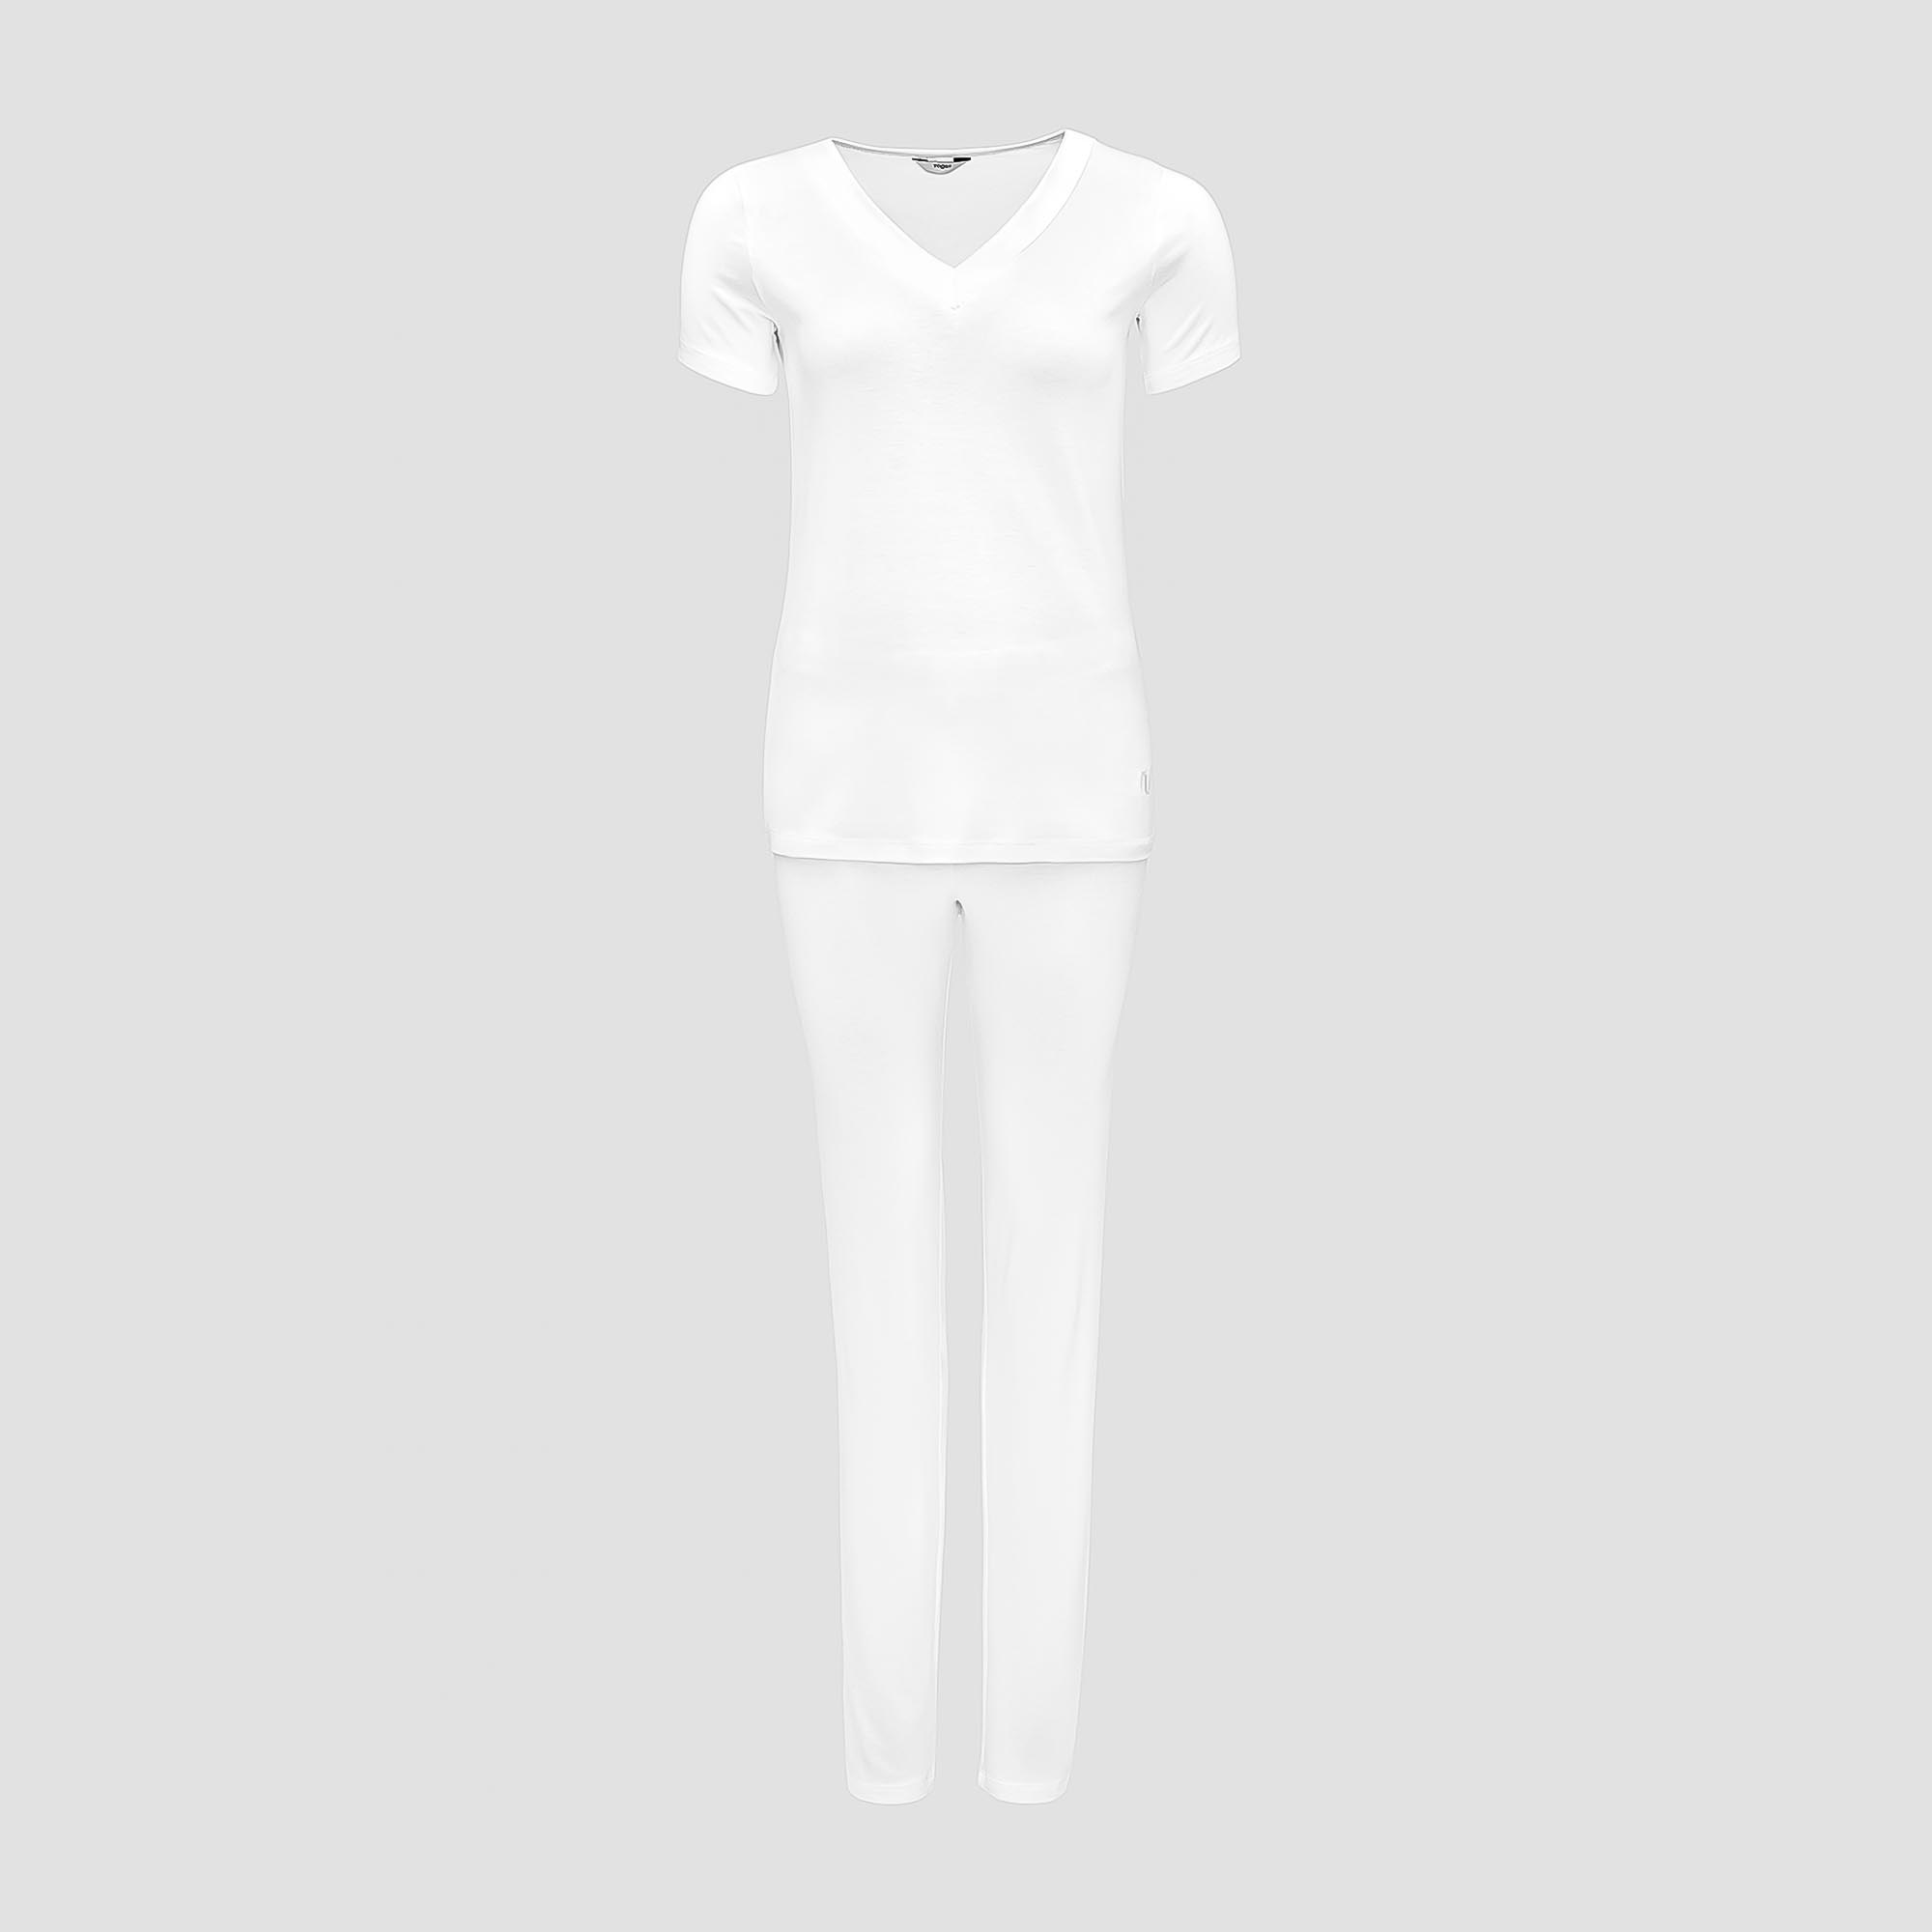 Пижама Togas Ингелла белая женская L(48) 2 предмета жен пижама с шортами инь янь белый р 52